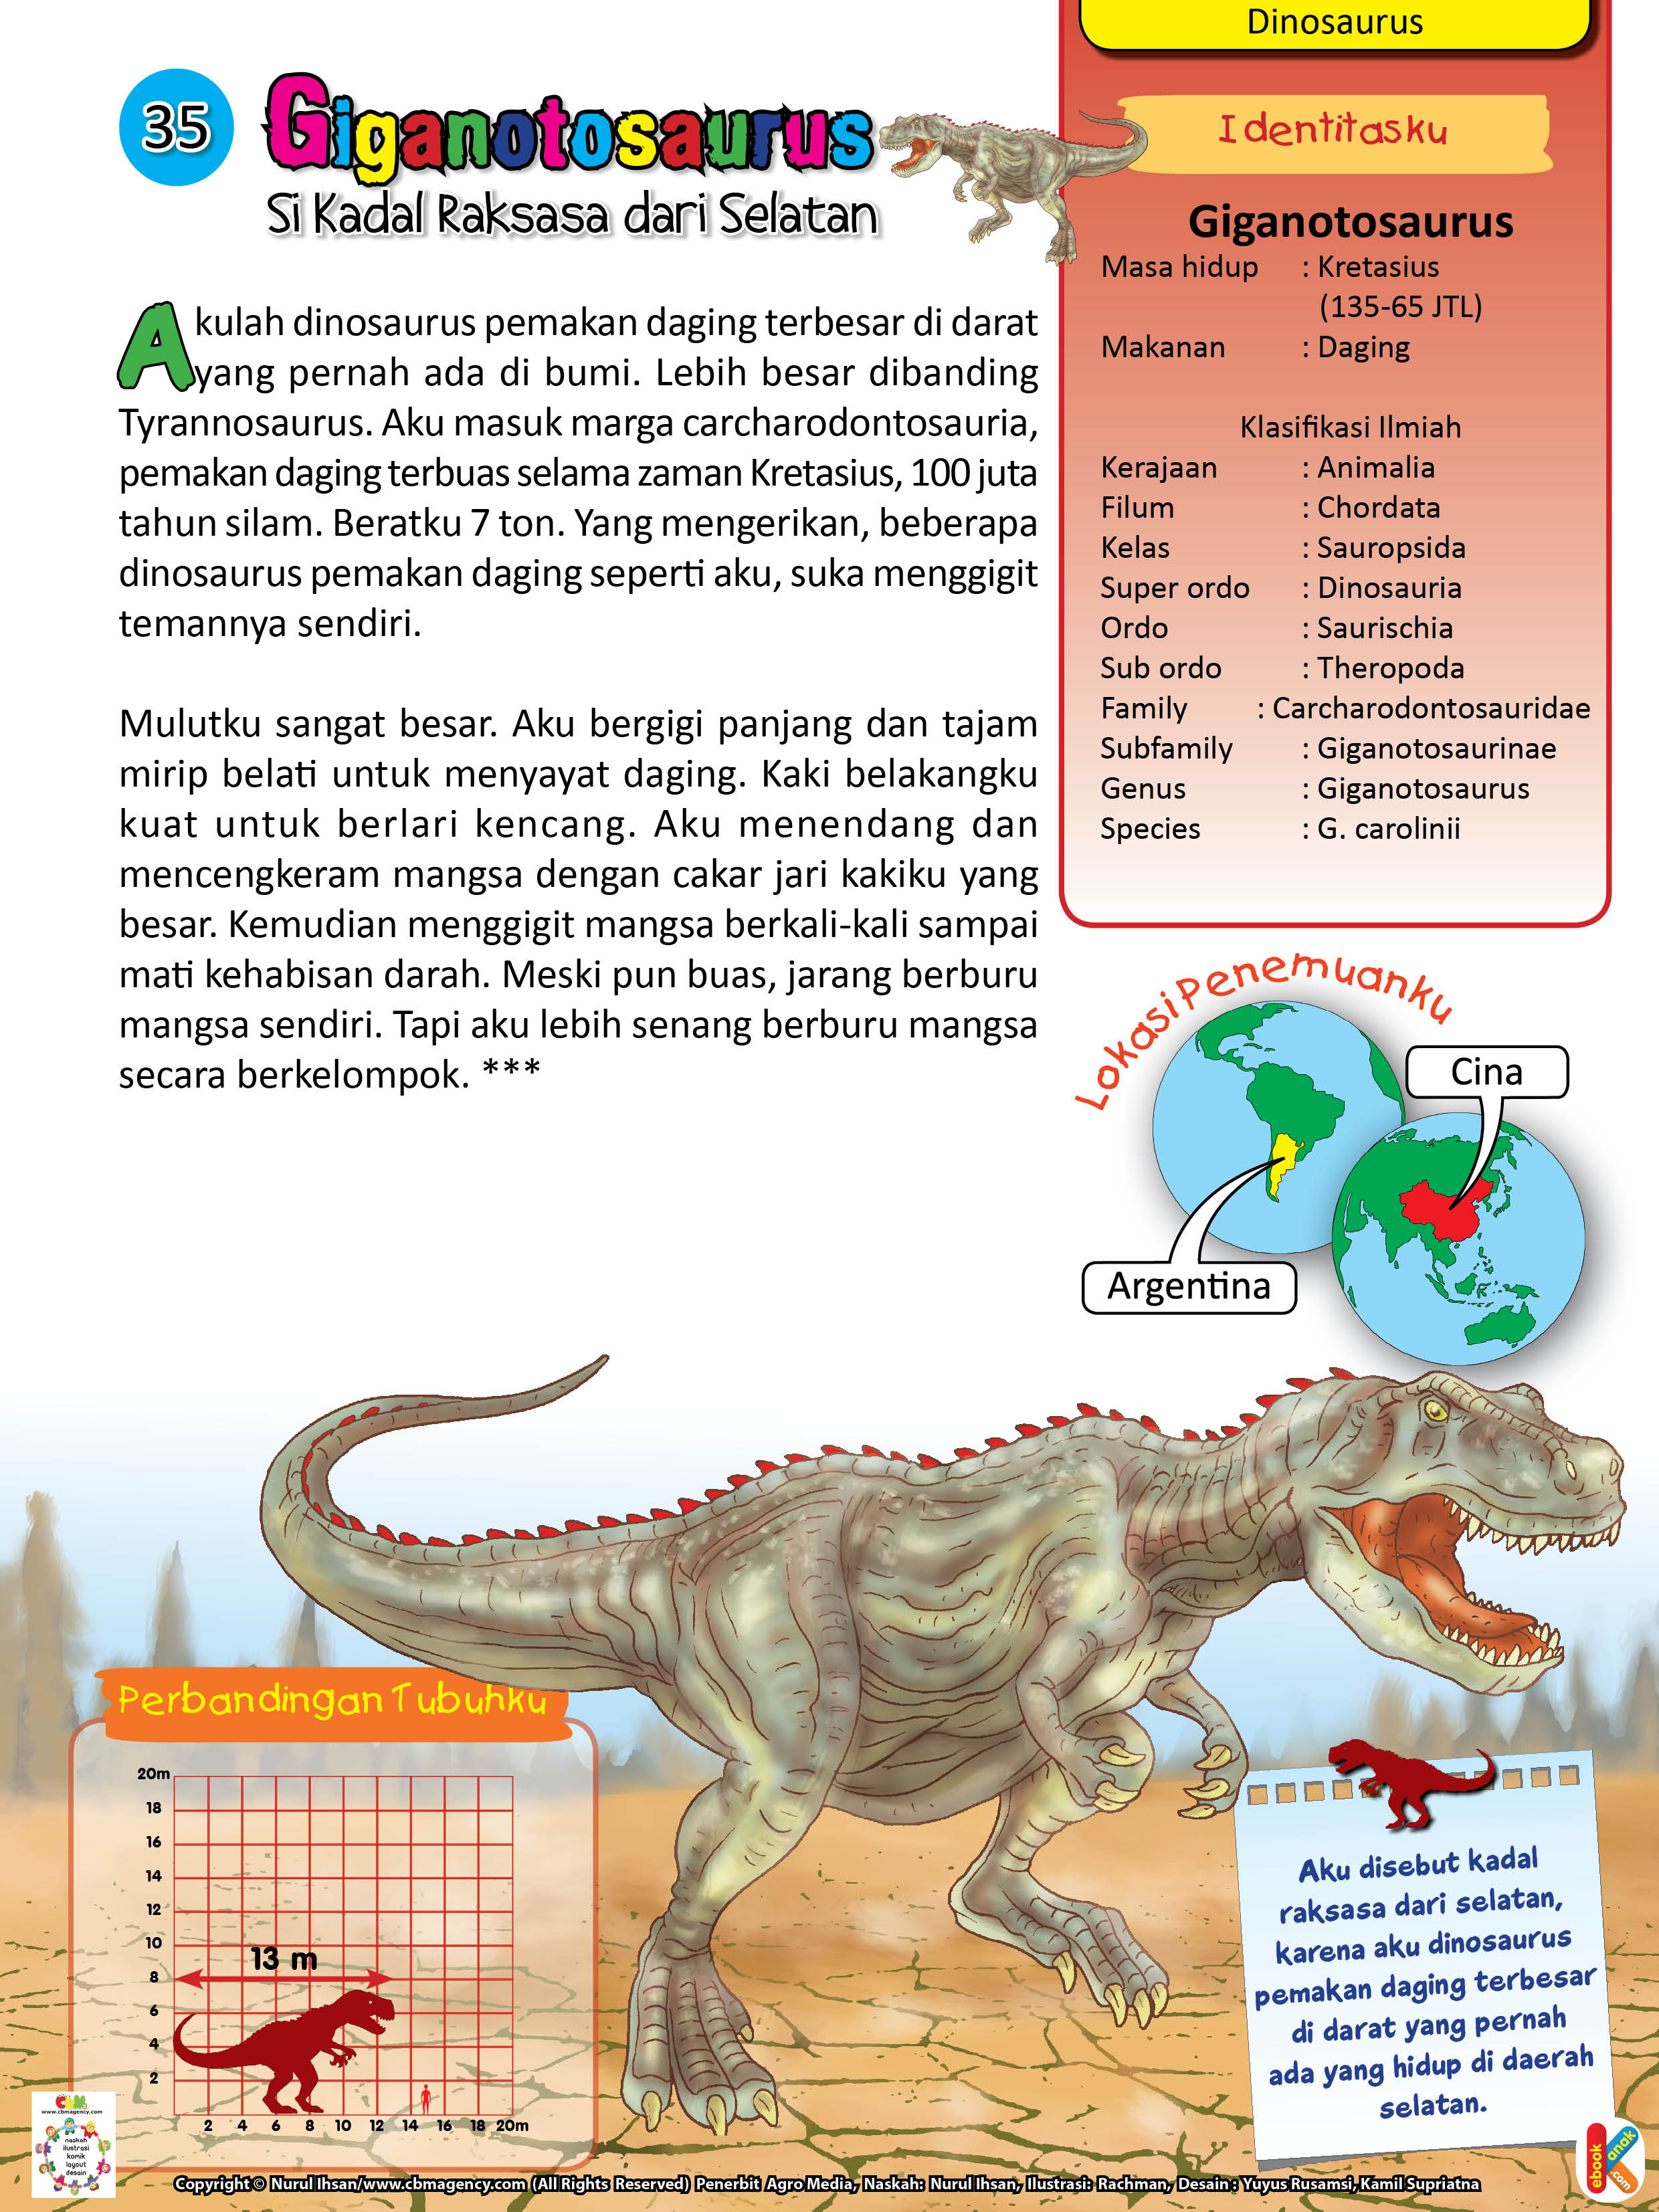 Giganotosaurus adalah dinosaurus pemakan daging terbesar.